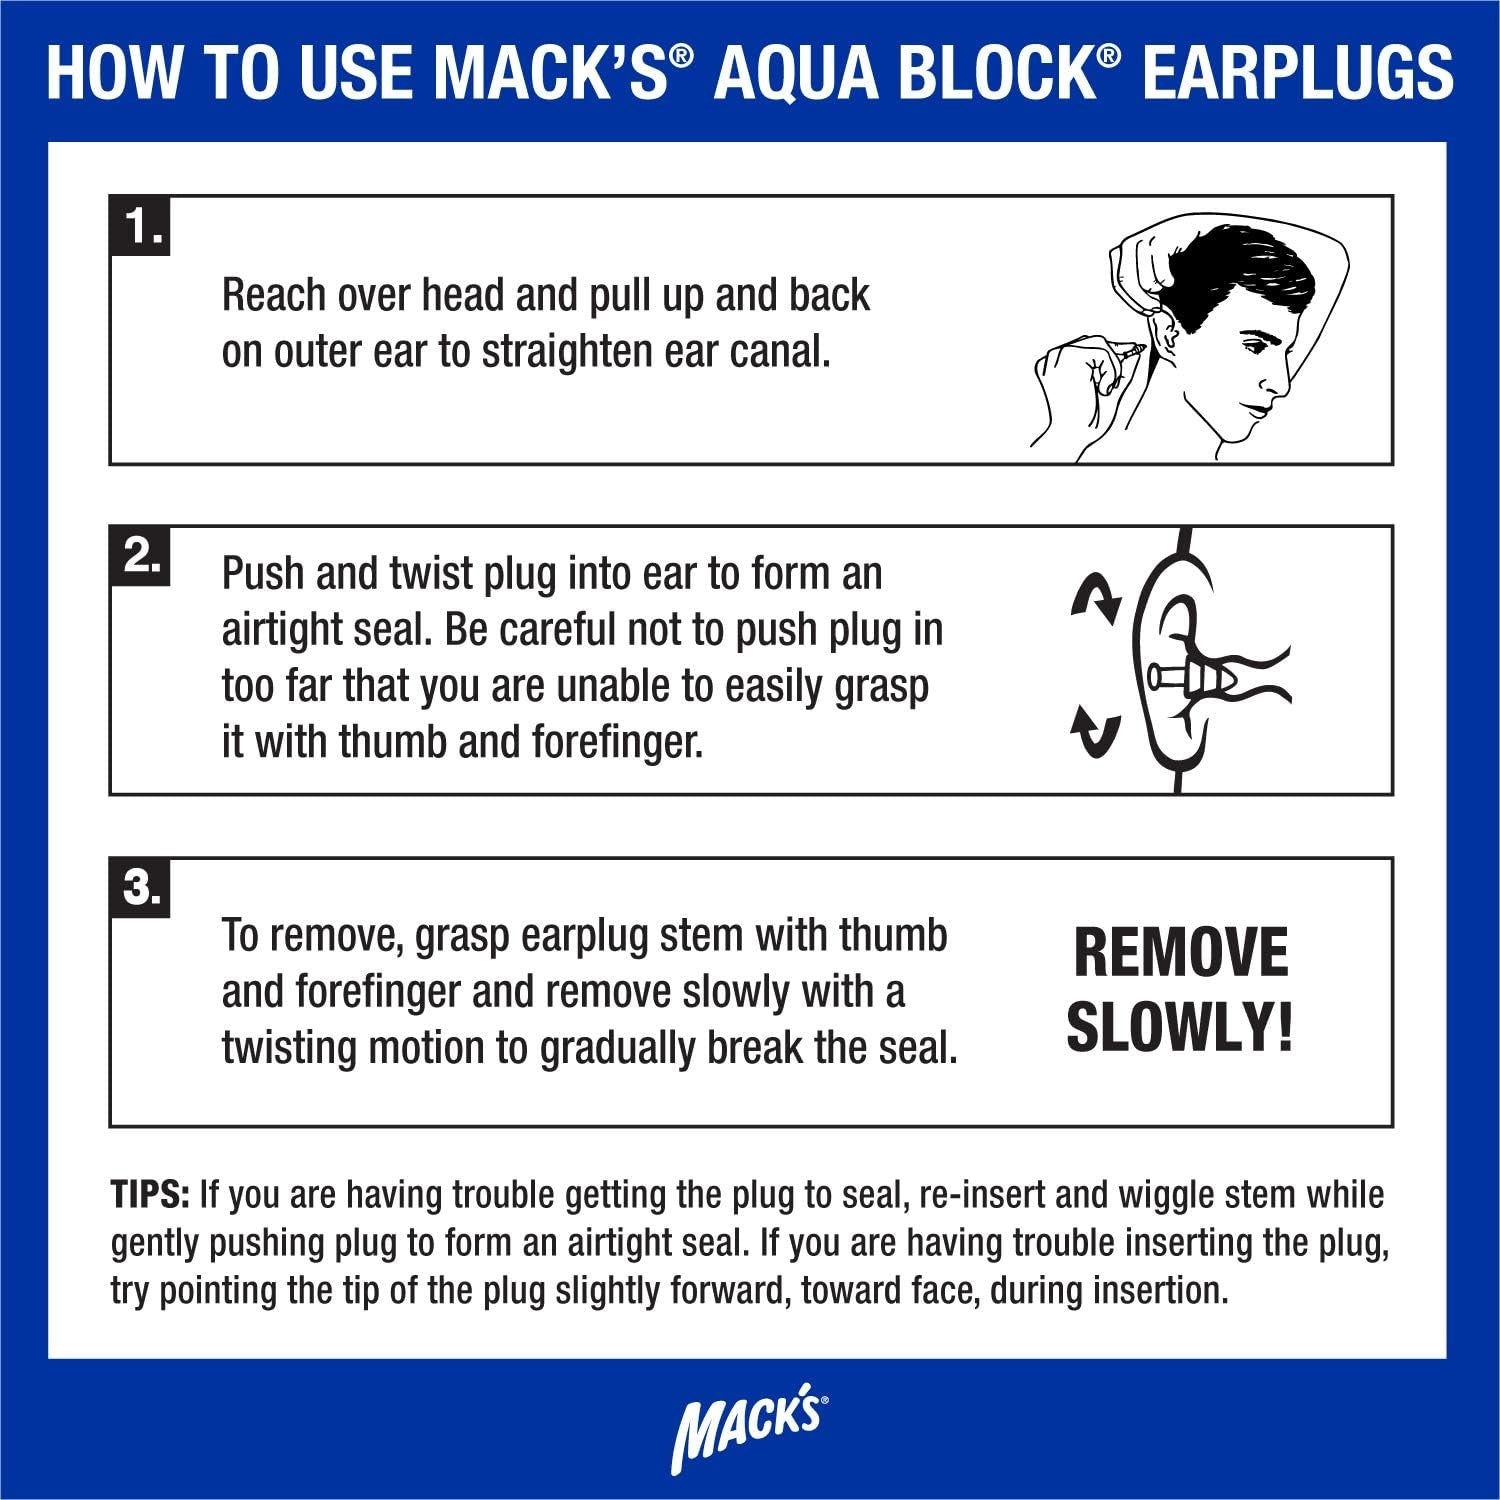 MACK'S EARPLUGS - Aqua Block - Purple - 2 Paires